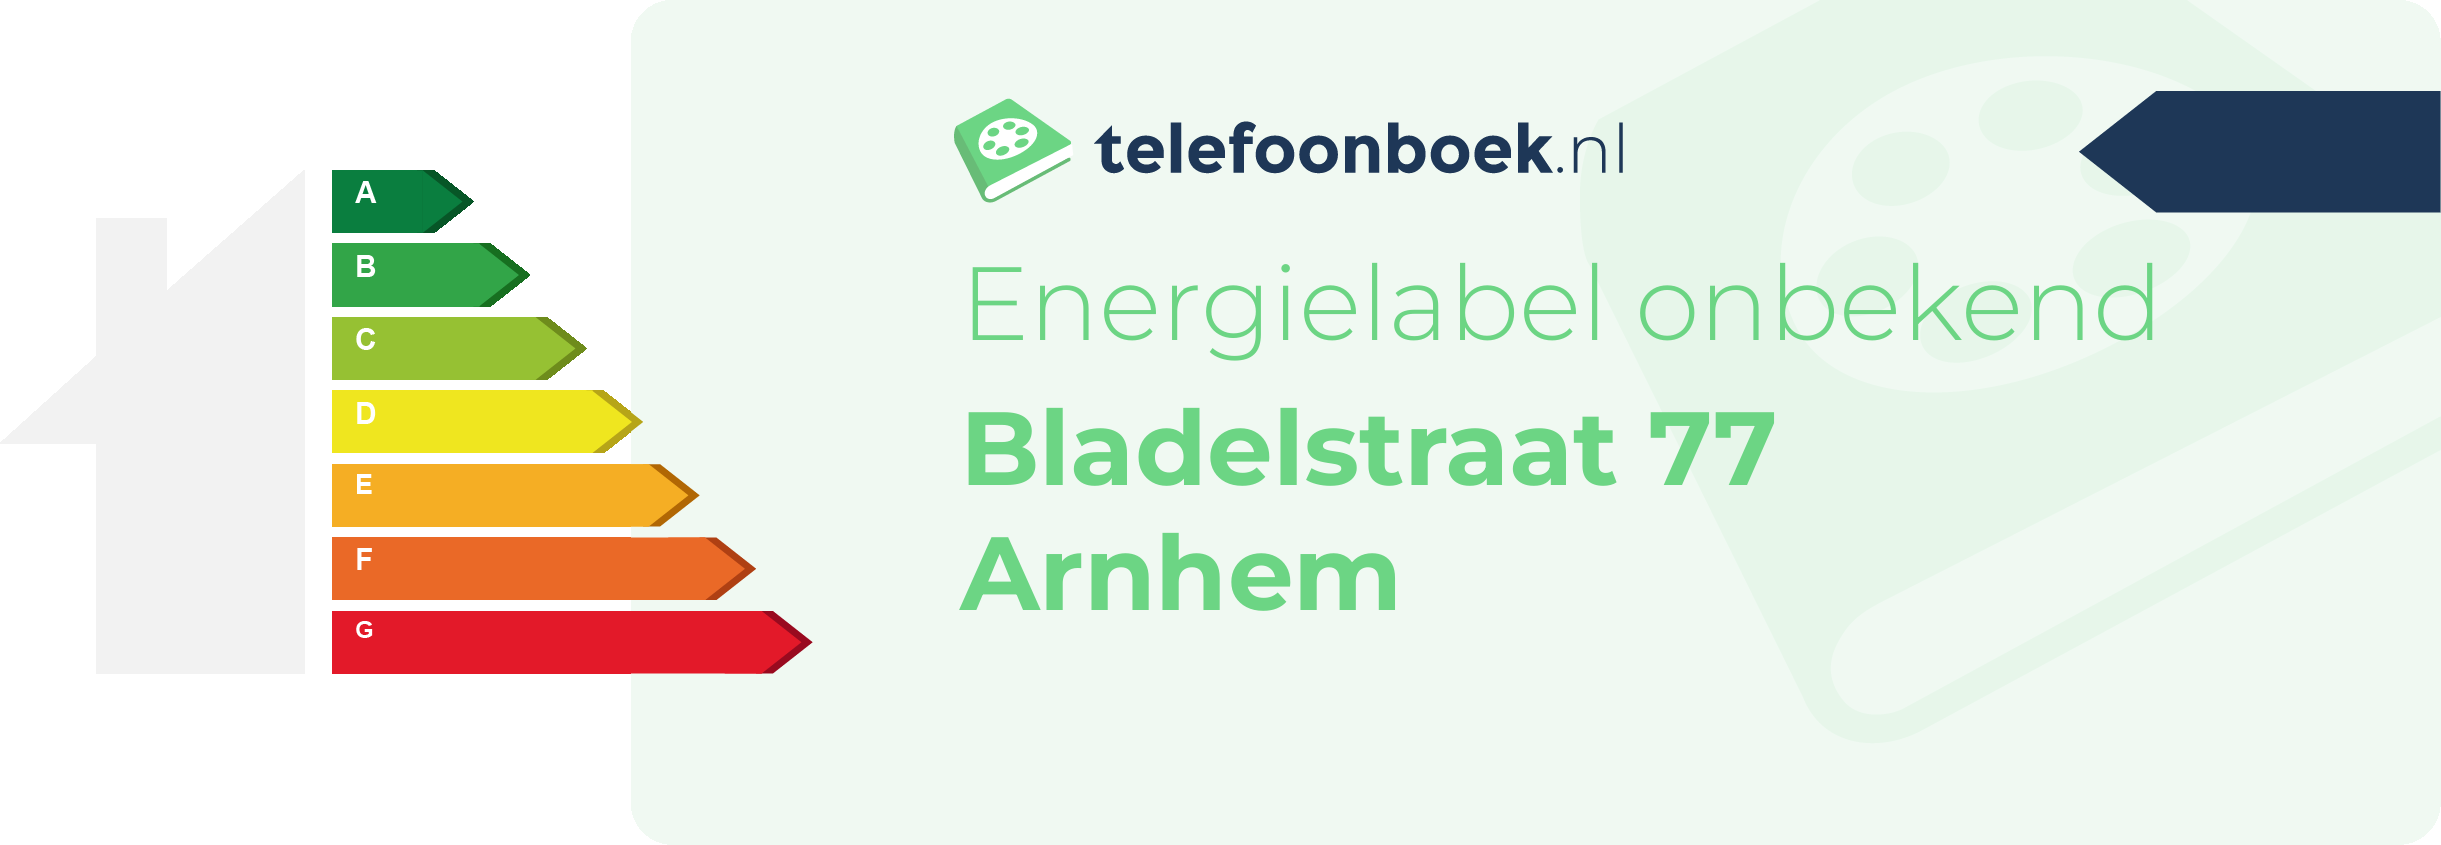 Energielabel Bladelstraat 77 Arnhem